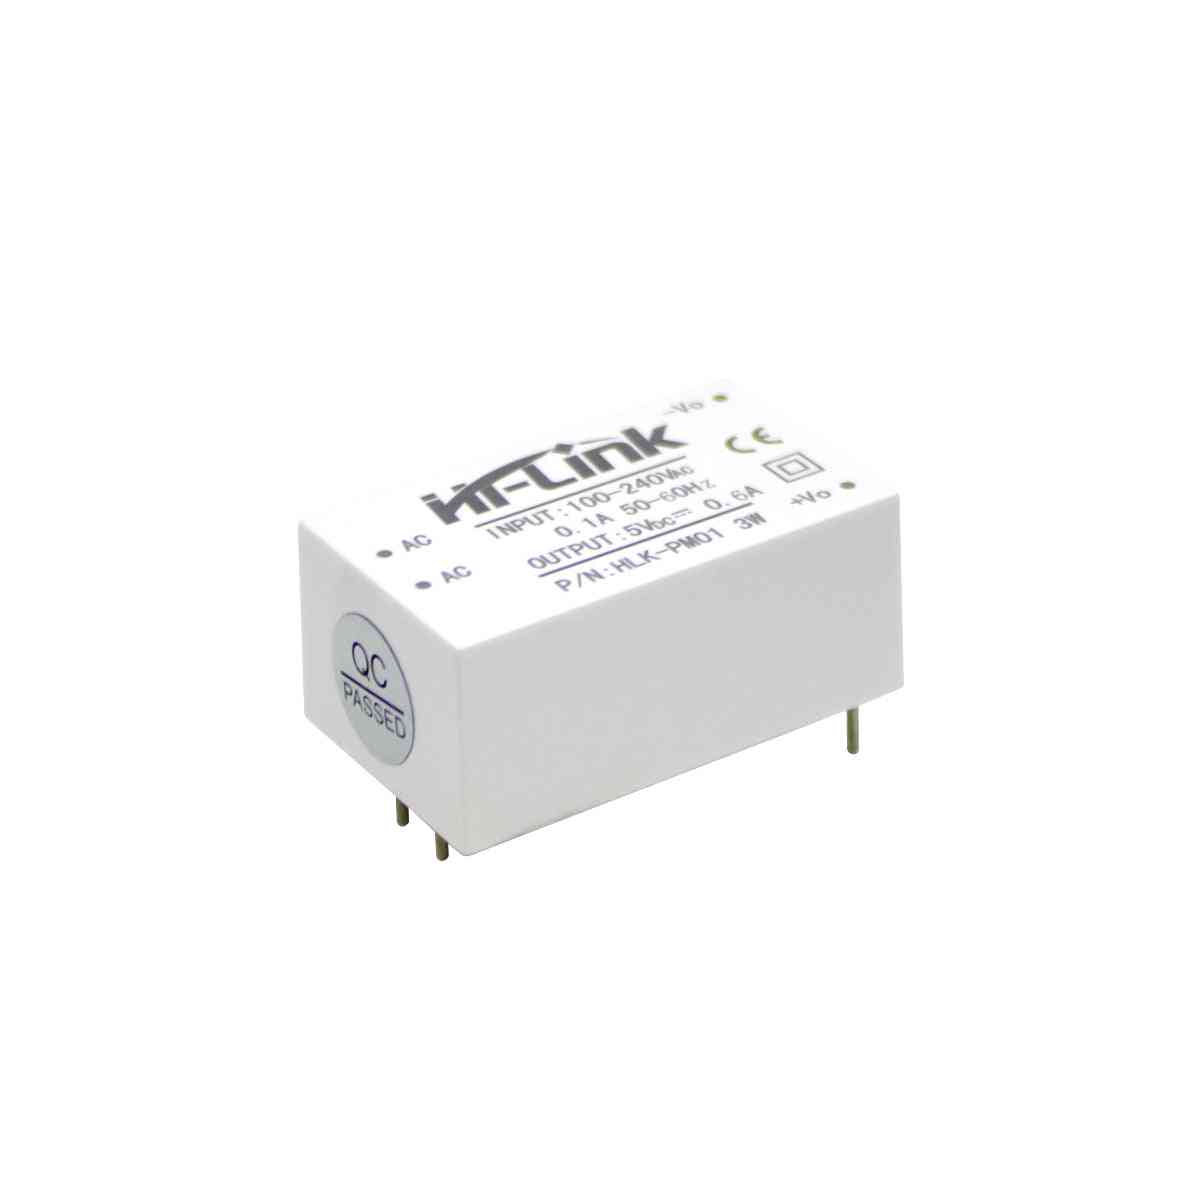 Smart-Remote hlk-pm01 módulo de alimentación ac / dc blanco -